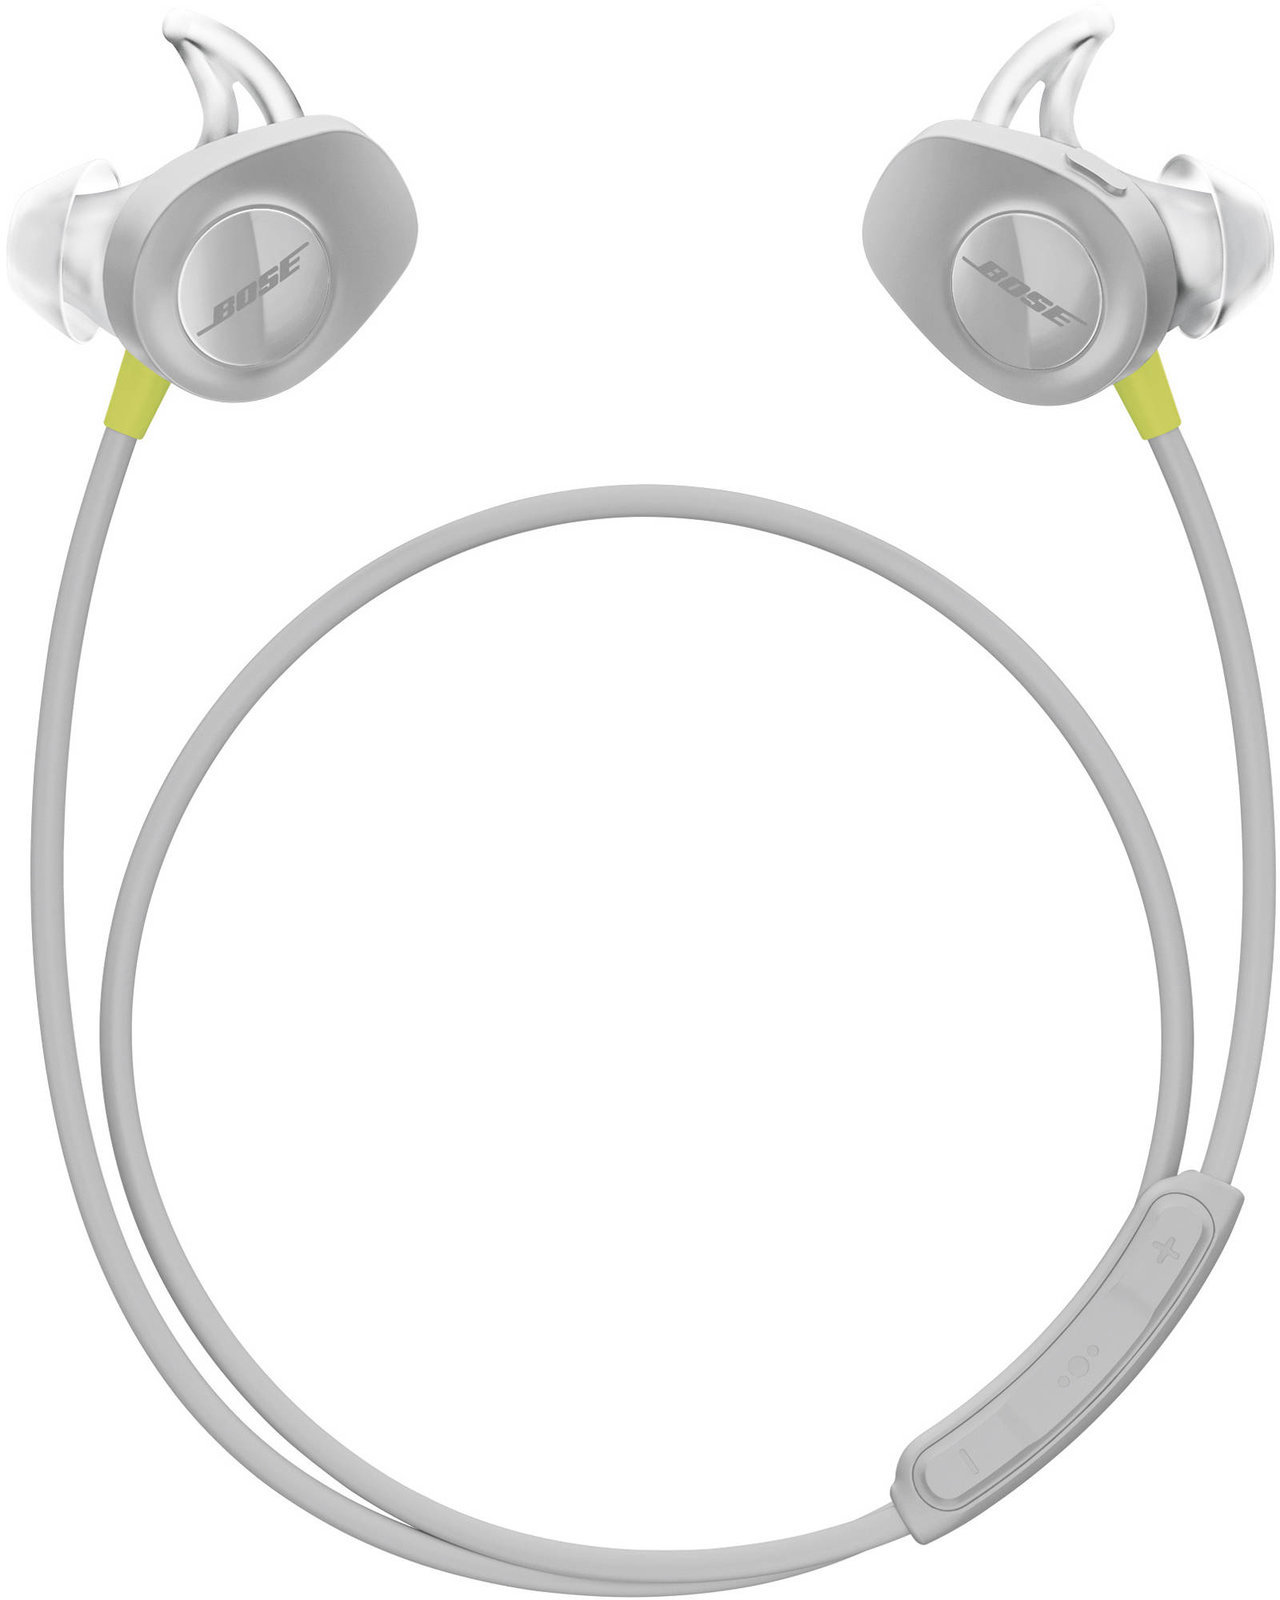 Bezdrôtové sluchadlá do uší Bose SoundSport Wireless in-ear headphones Lemon